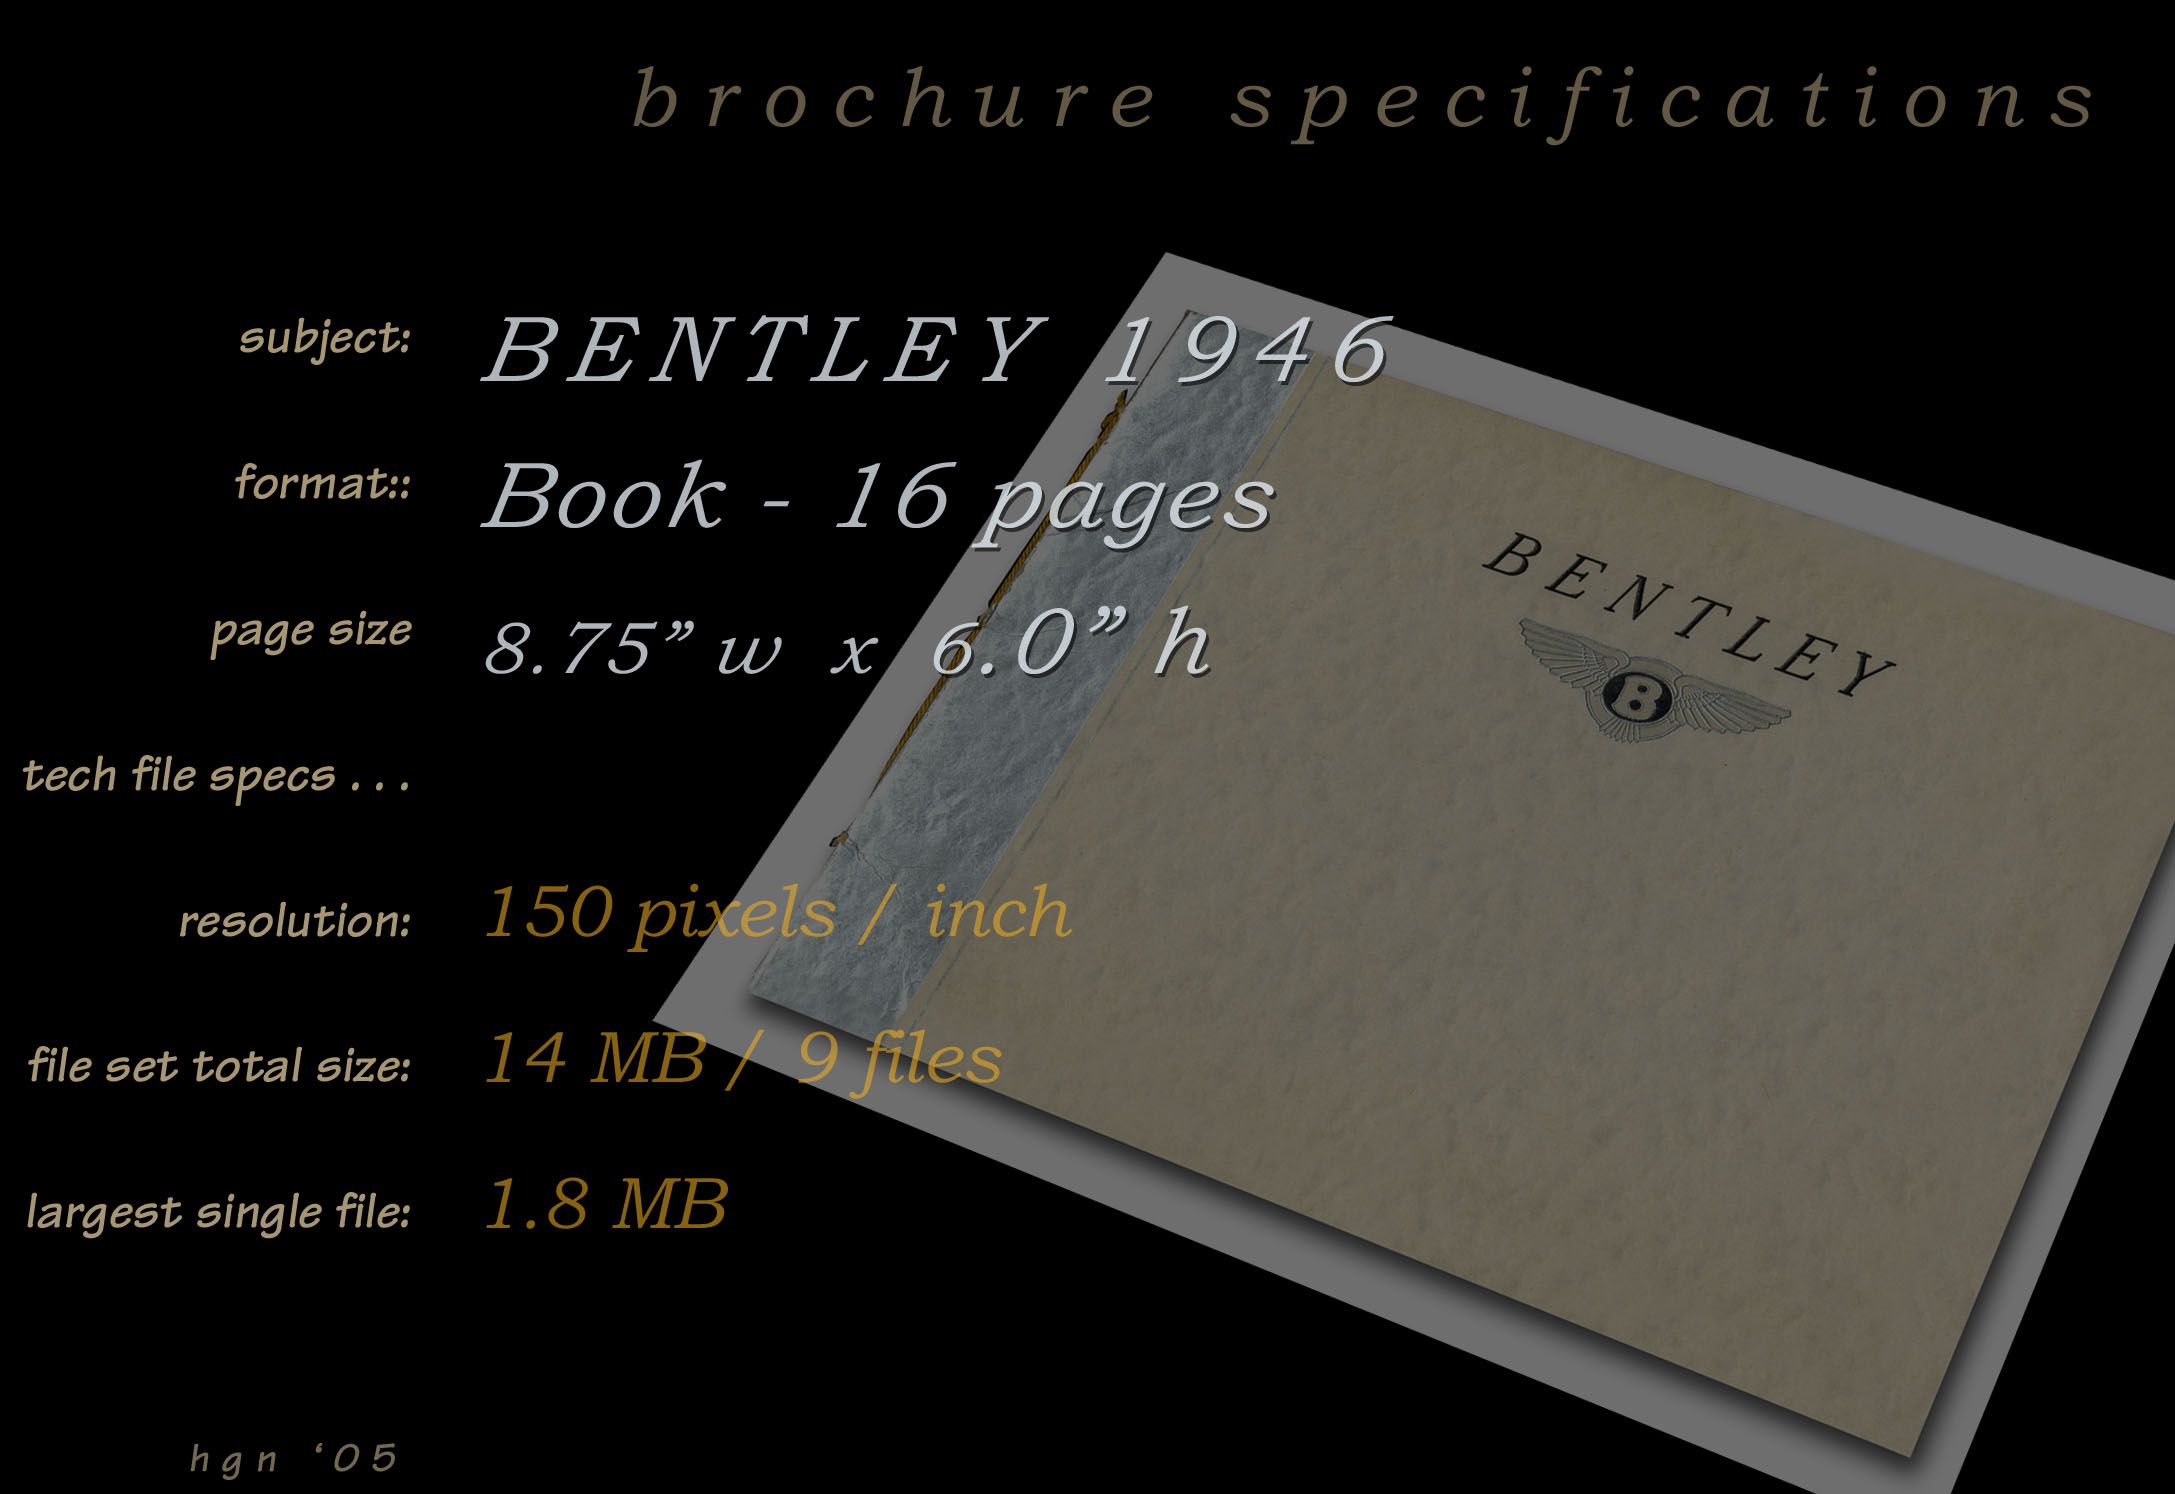 1946 Bentley brochure